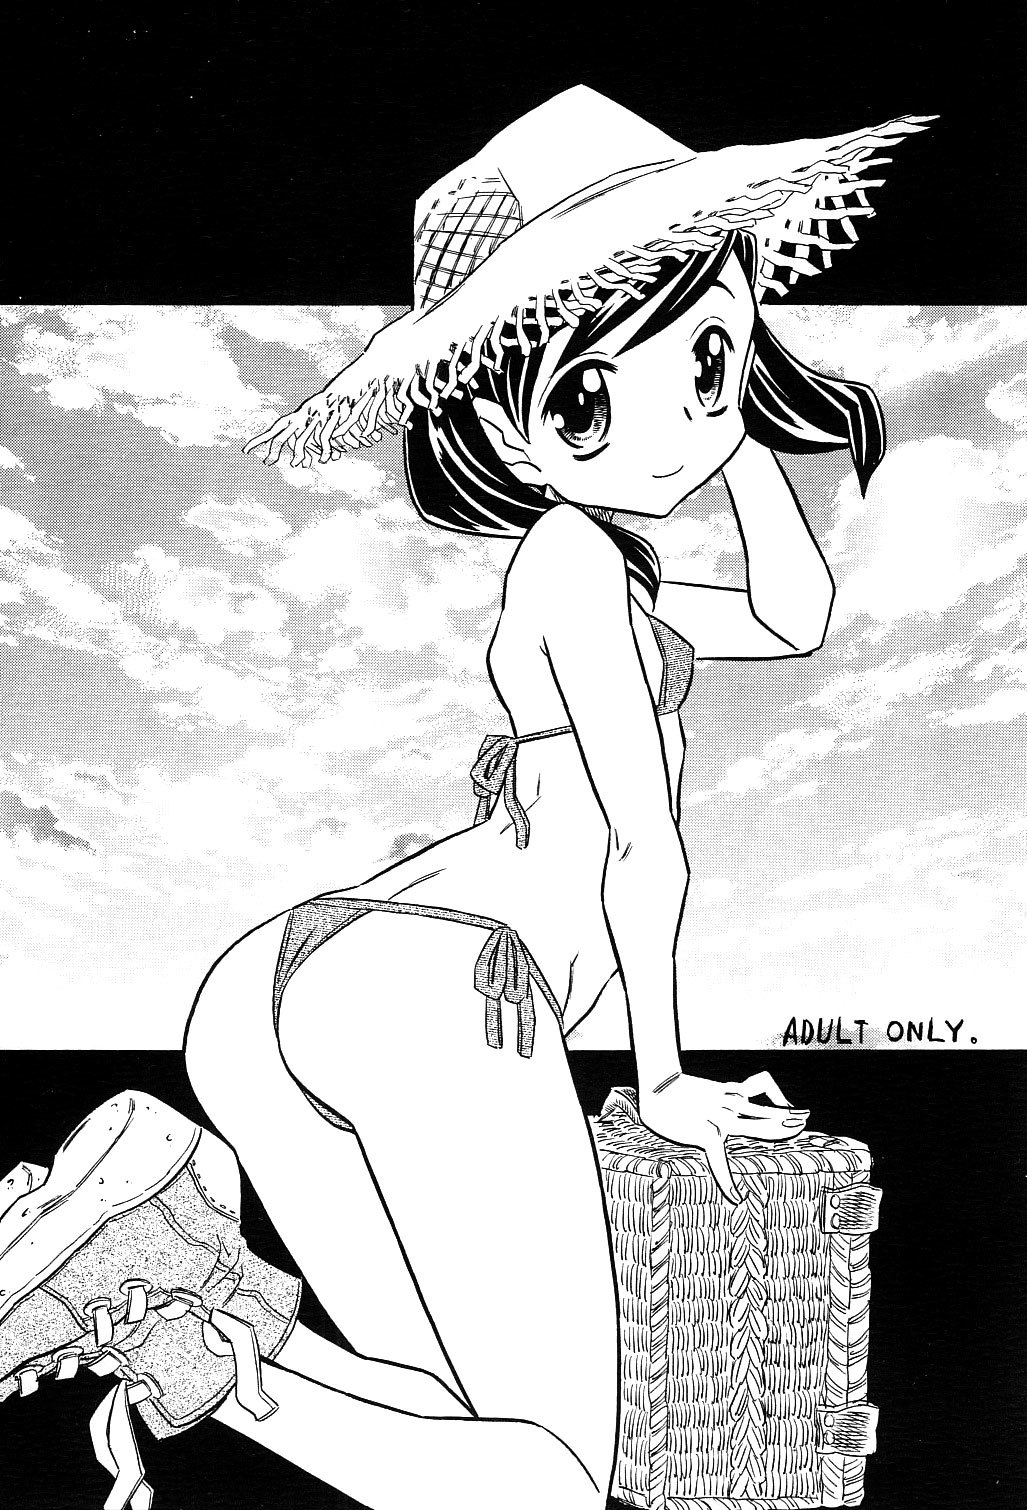 Female Ero Manga Artist Scorned 12 hentai manga